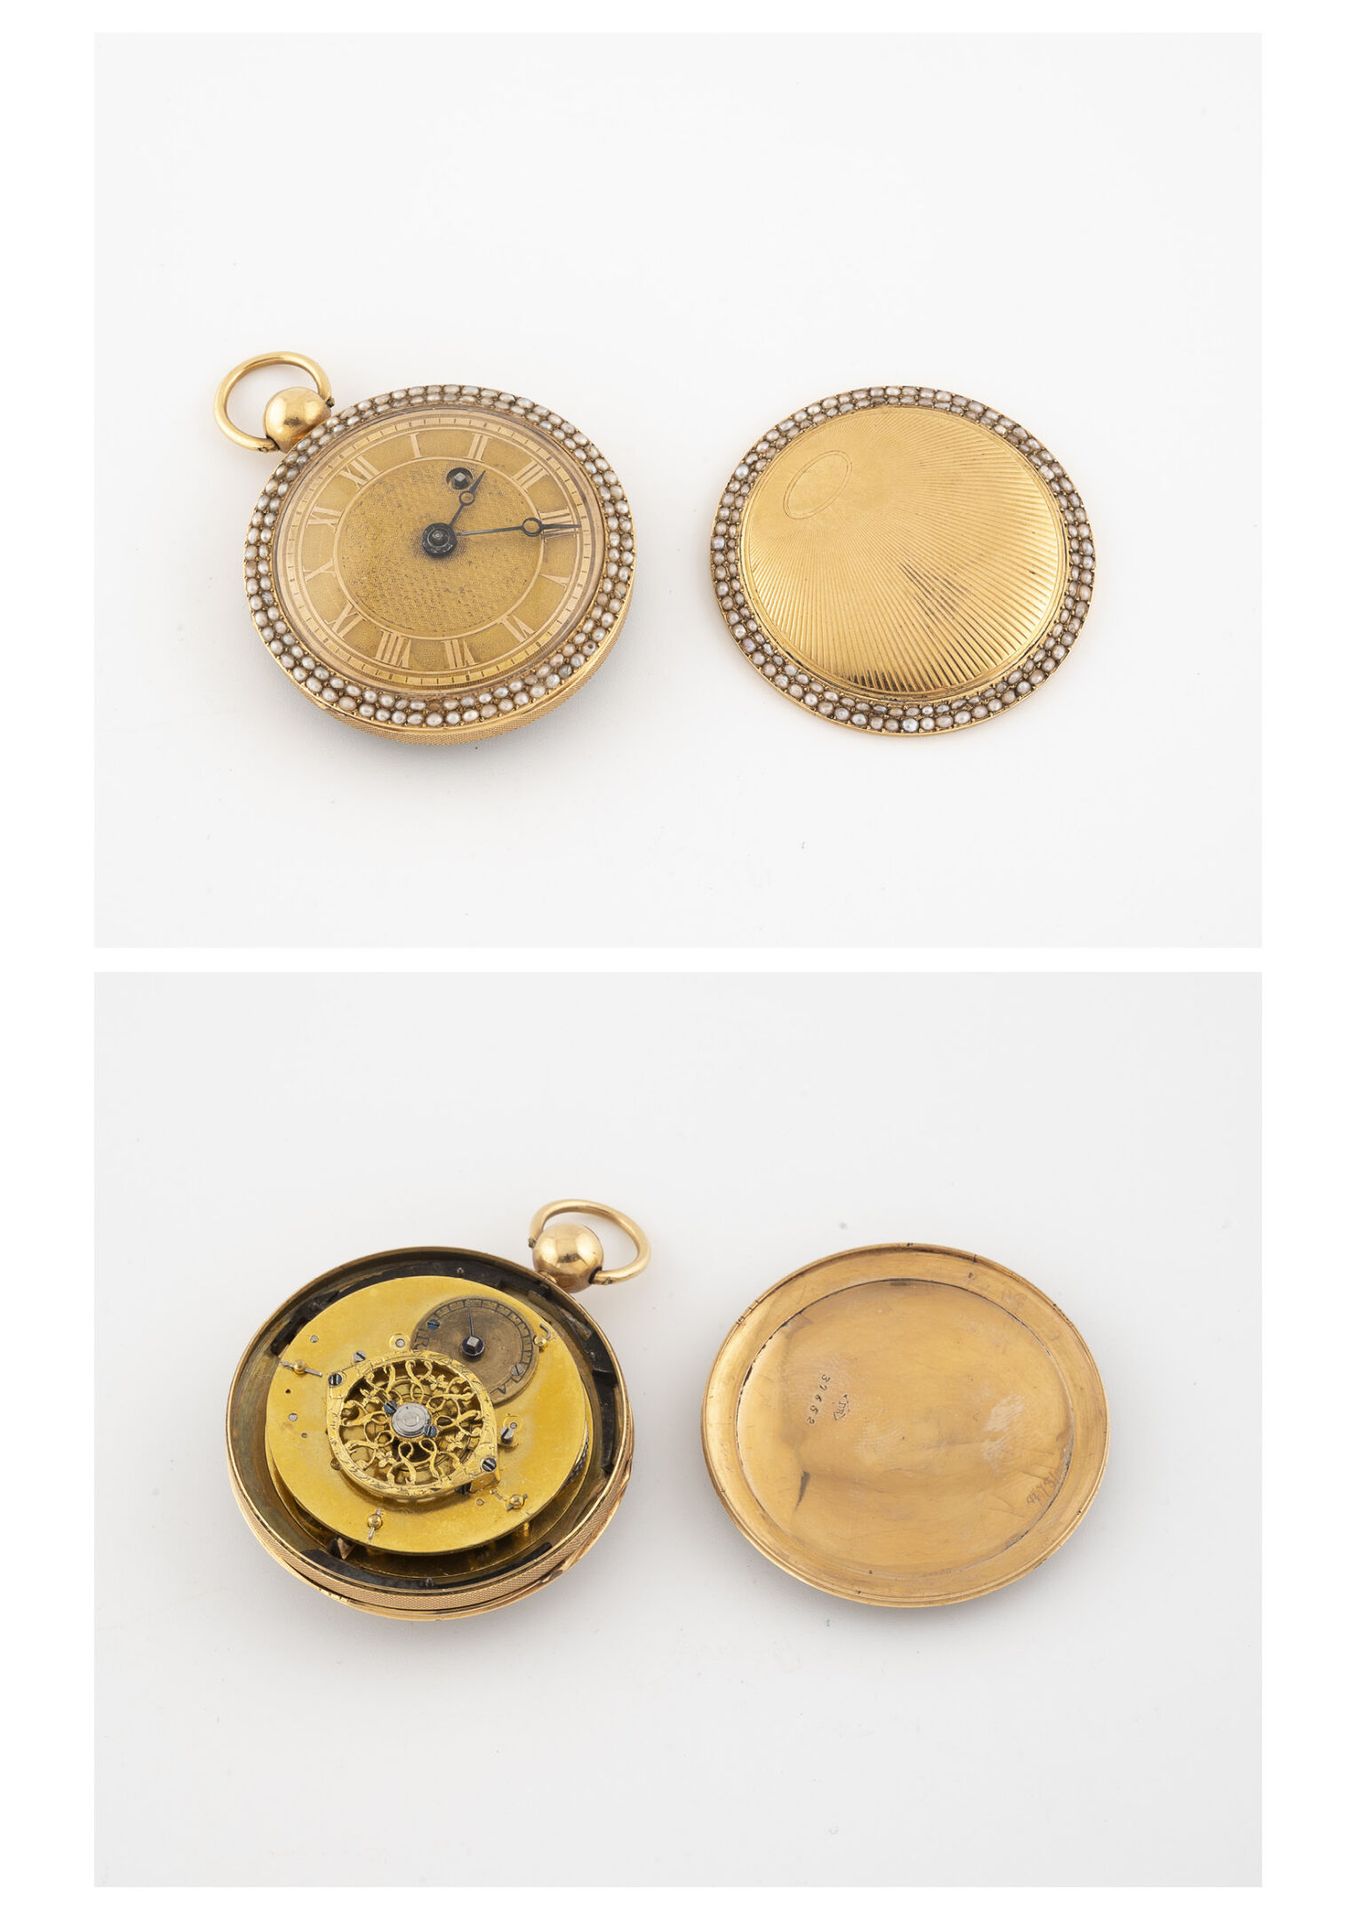 Null Taschenuhr aus Gelbgold (750).

Guillochierter Rückendeckel mit Strahlendek&hellip;